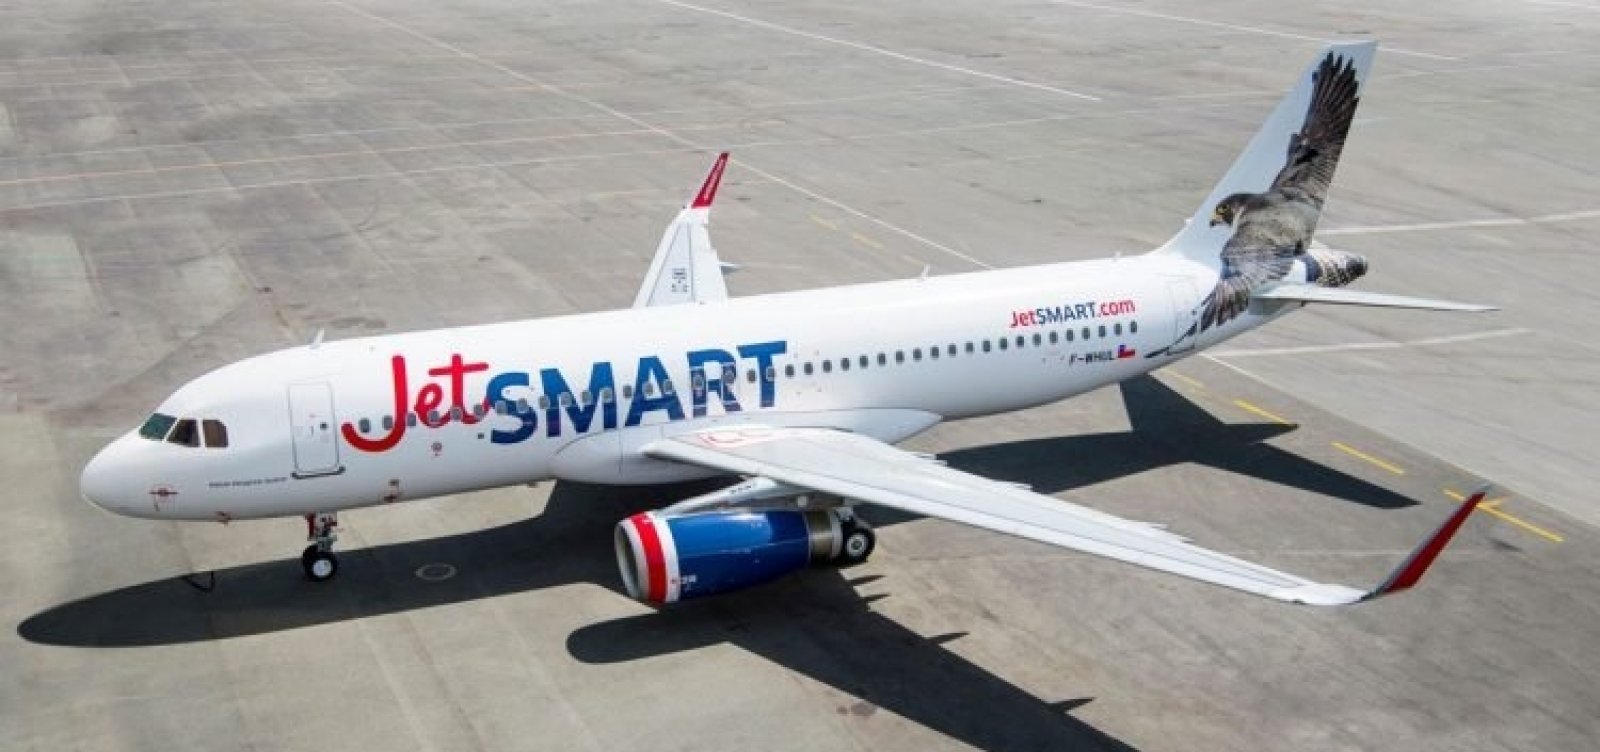 Aérea de baixo custo JetSmart começa a voar para o Brasil